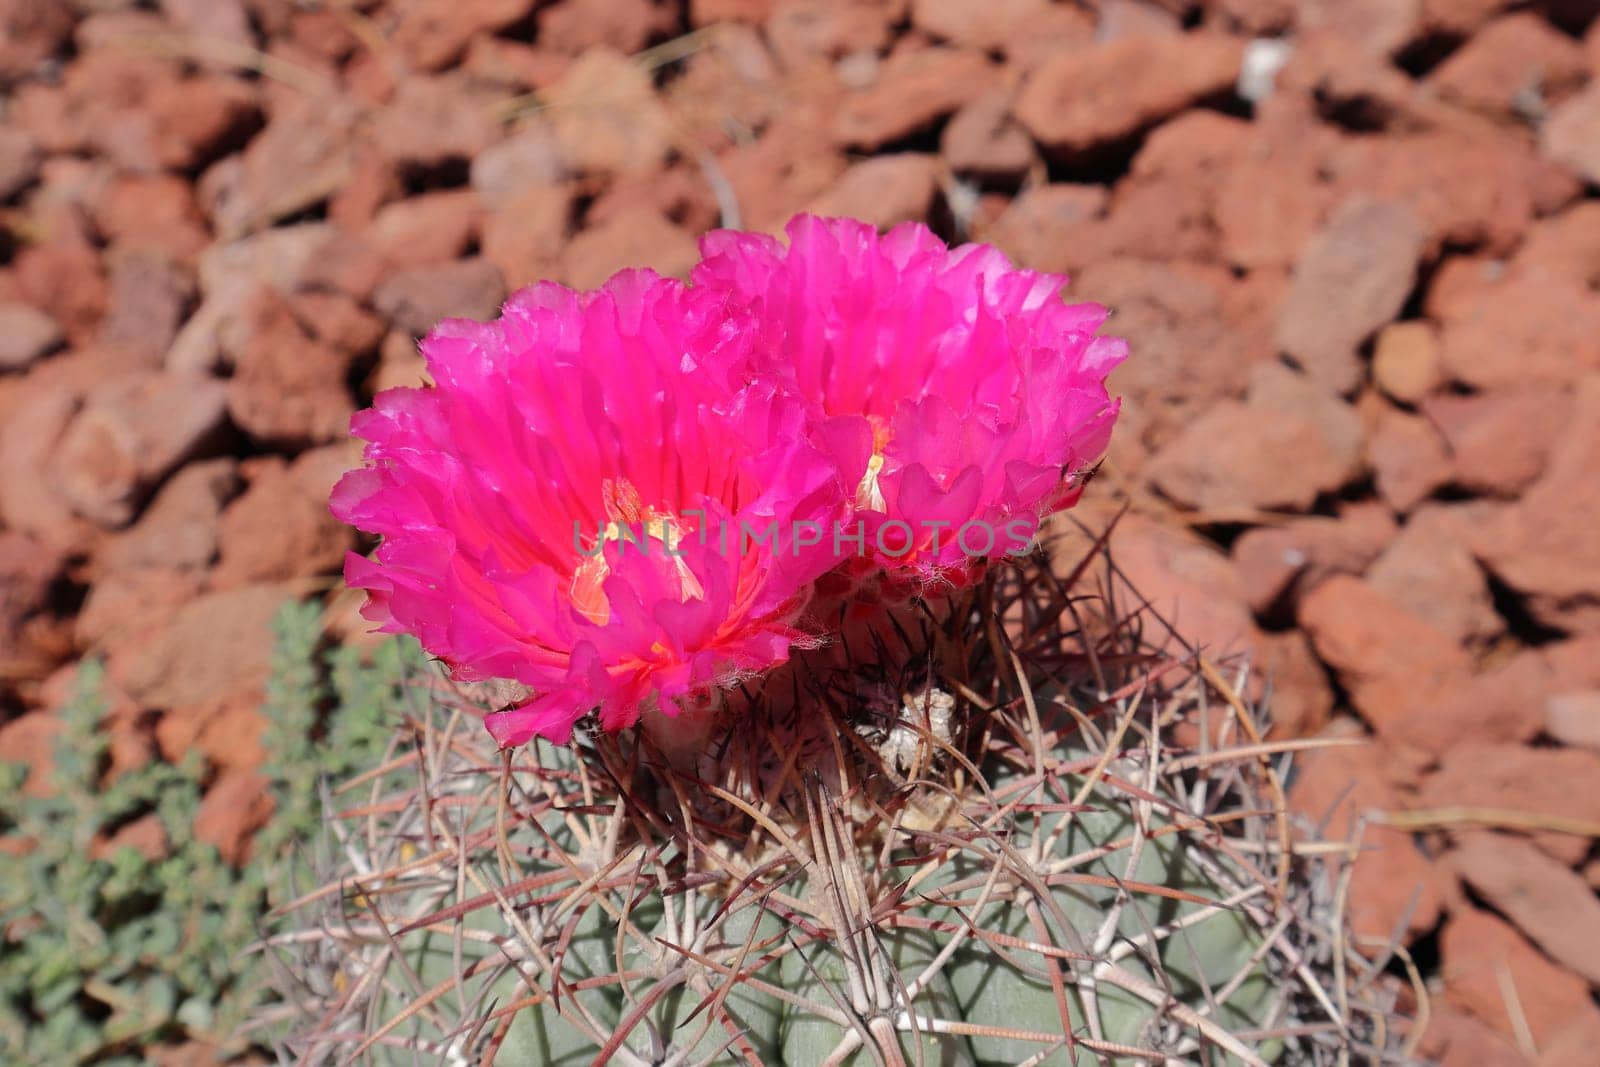 Golden barrel cactus (Echinocactus grusonii). Closeup of Echinocactus Grusonii with pink flowers.